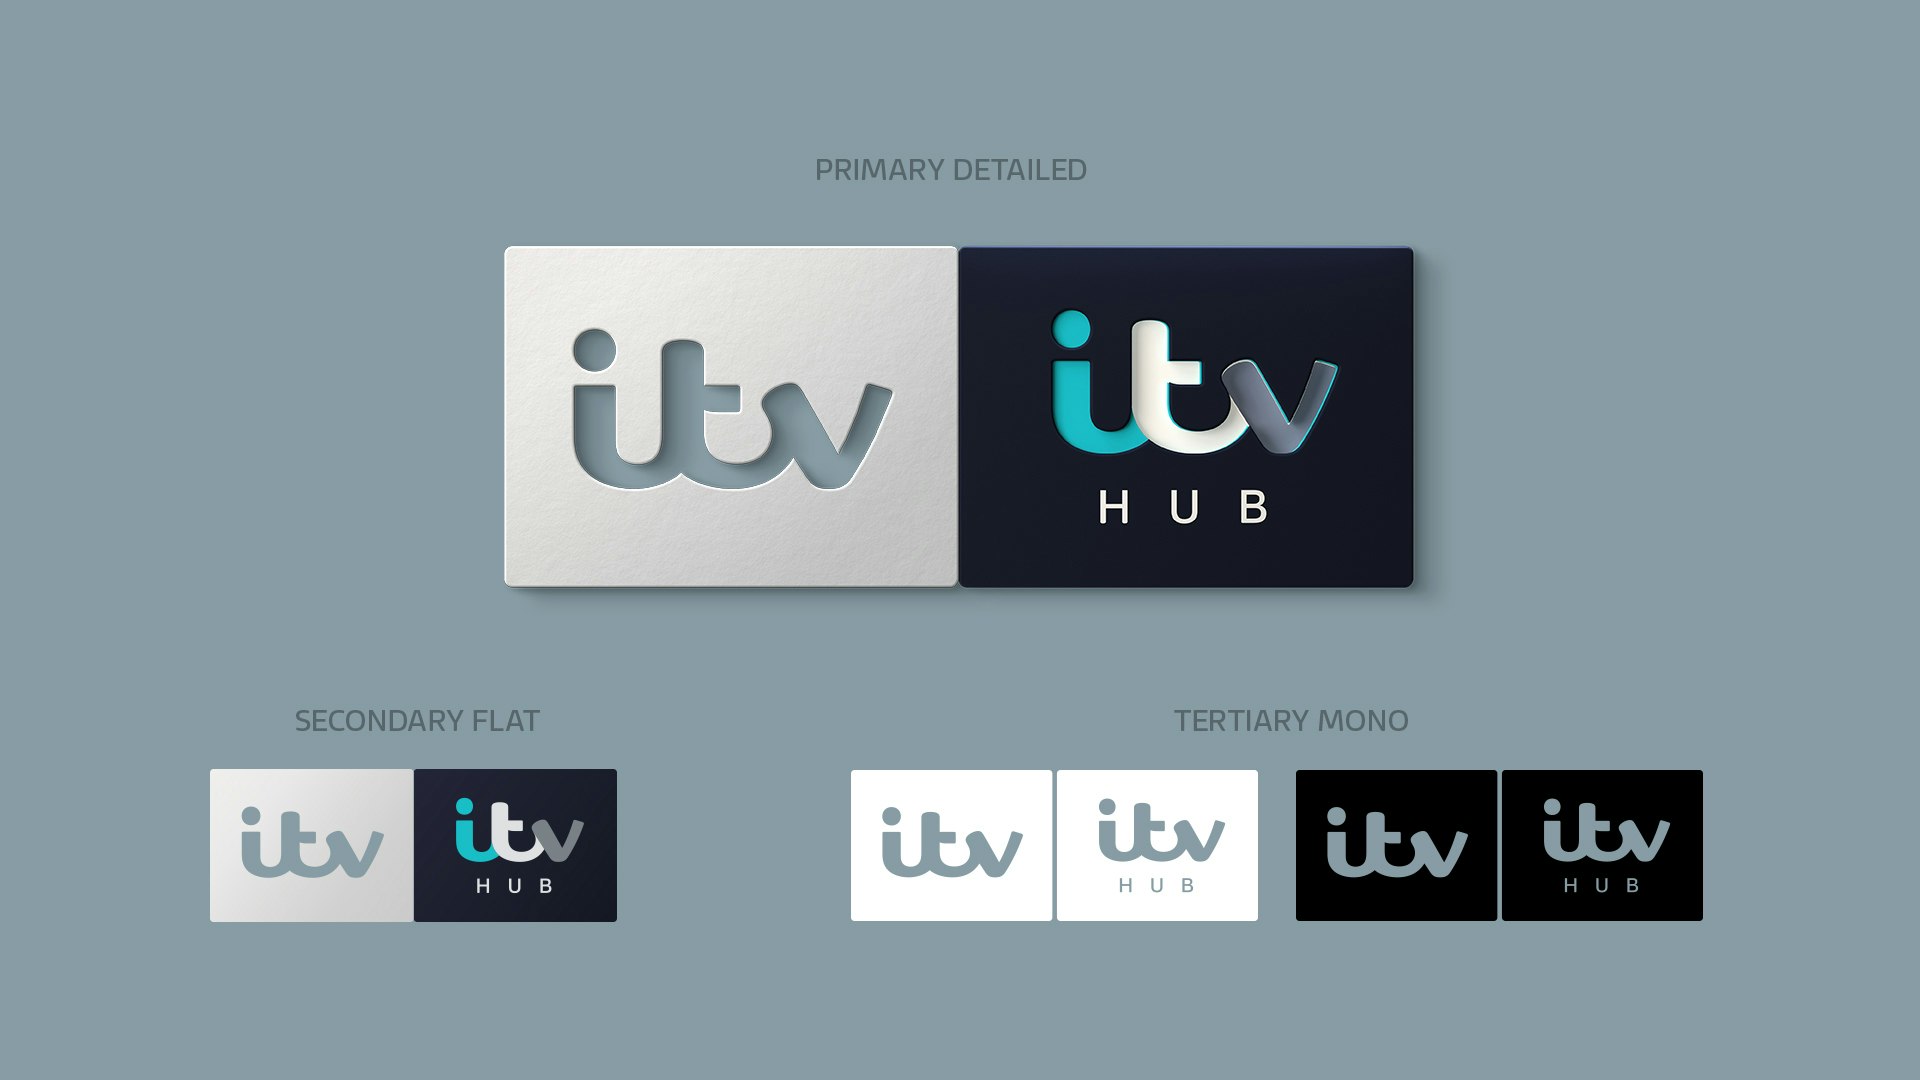 Jason Ford - ITV and ITV Hub Dual Branding